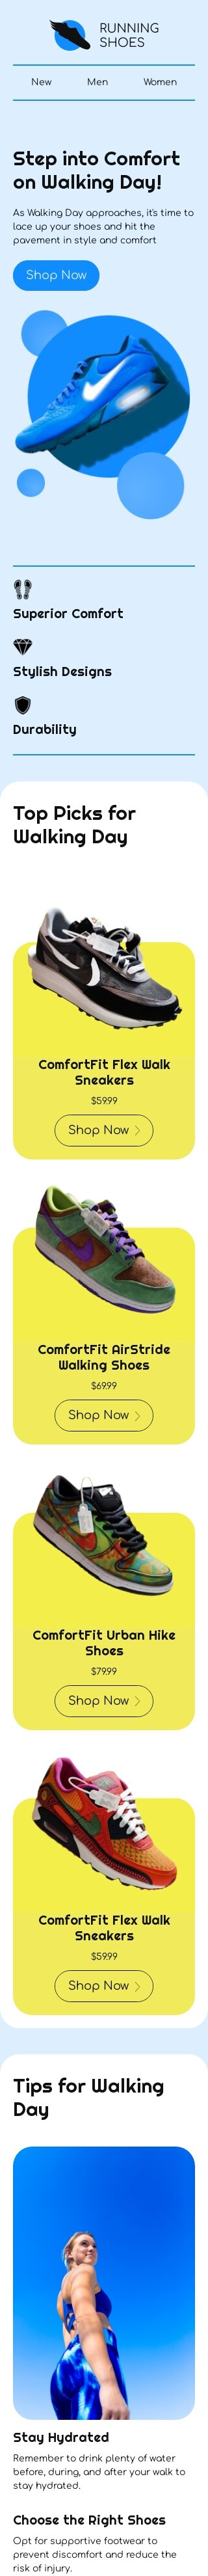 Modello email Giornata di camminata «Entra nel comfort» per il settore industriale di moda Visualizzazione mobile